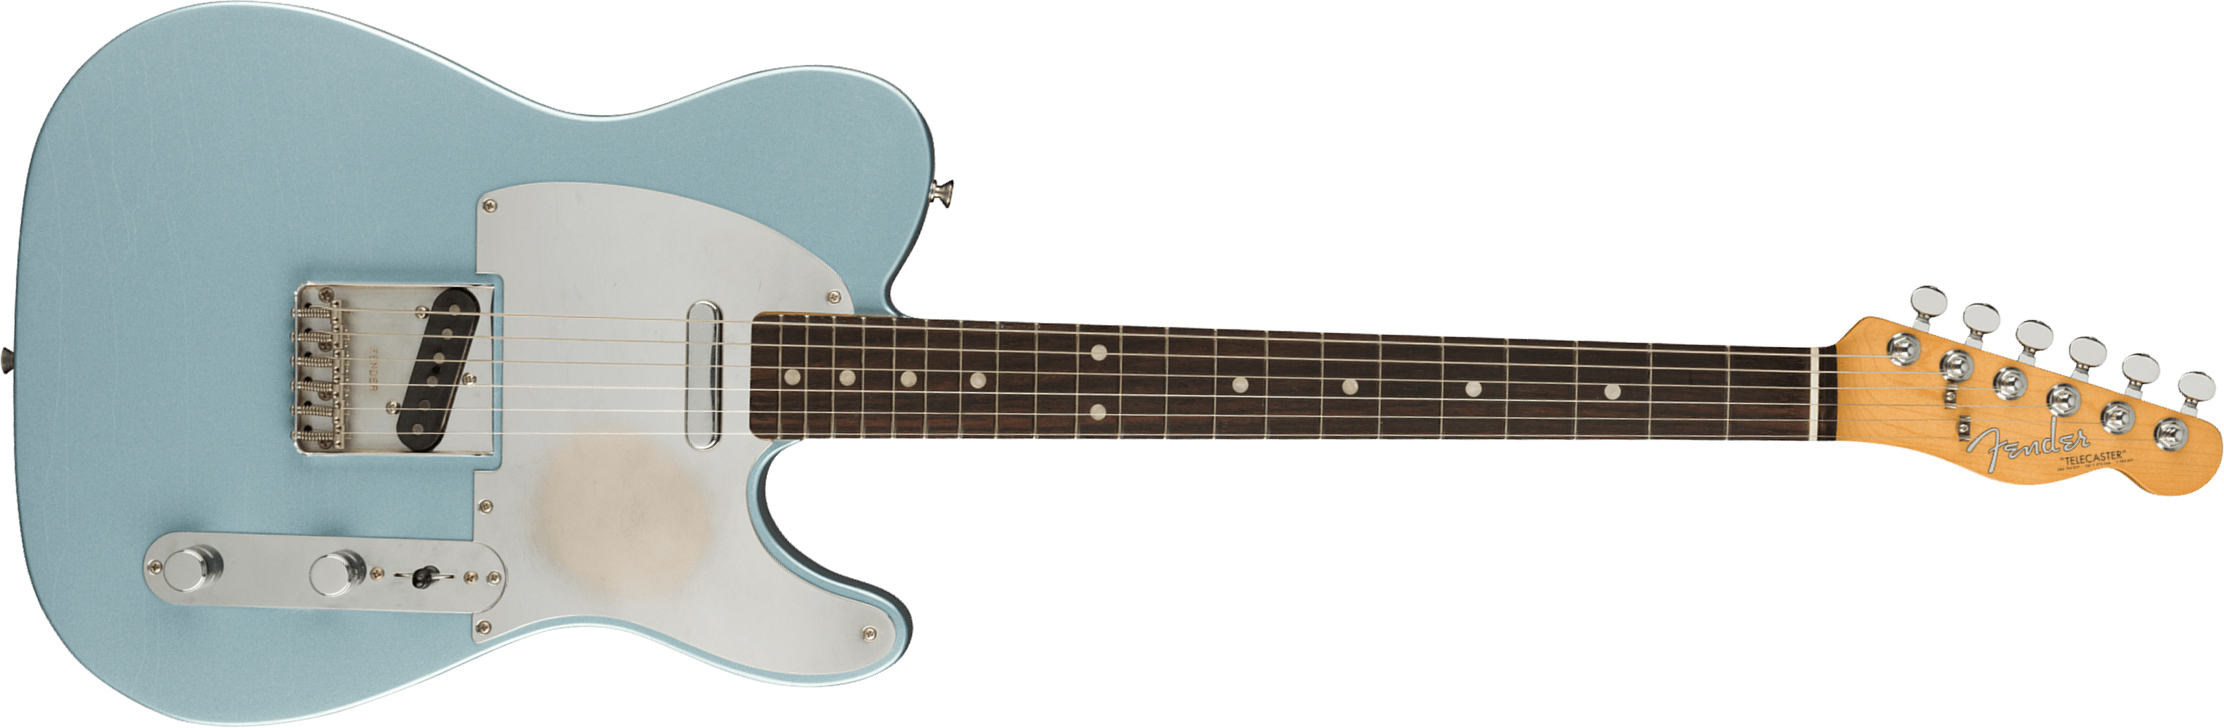 Fender Chrissie Hynde Tele Signature Mex Rw - Road Worn Faded Ice Blue Metallic - Televorm elektrische gitaar - Main picture